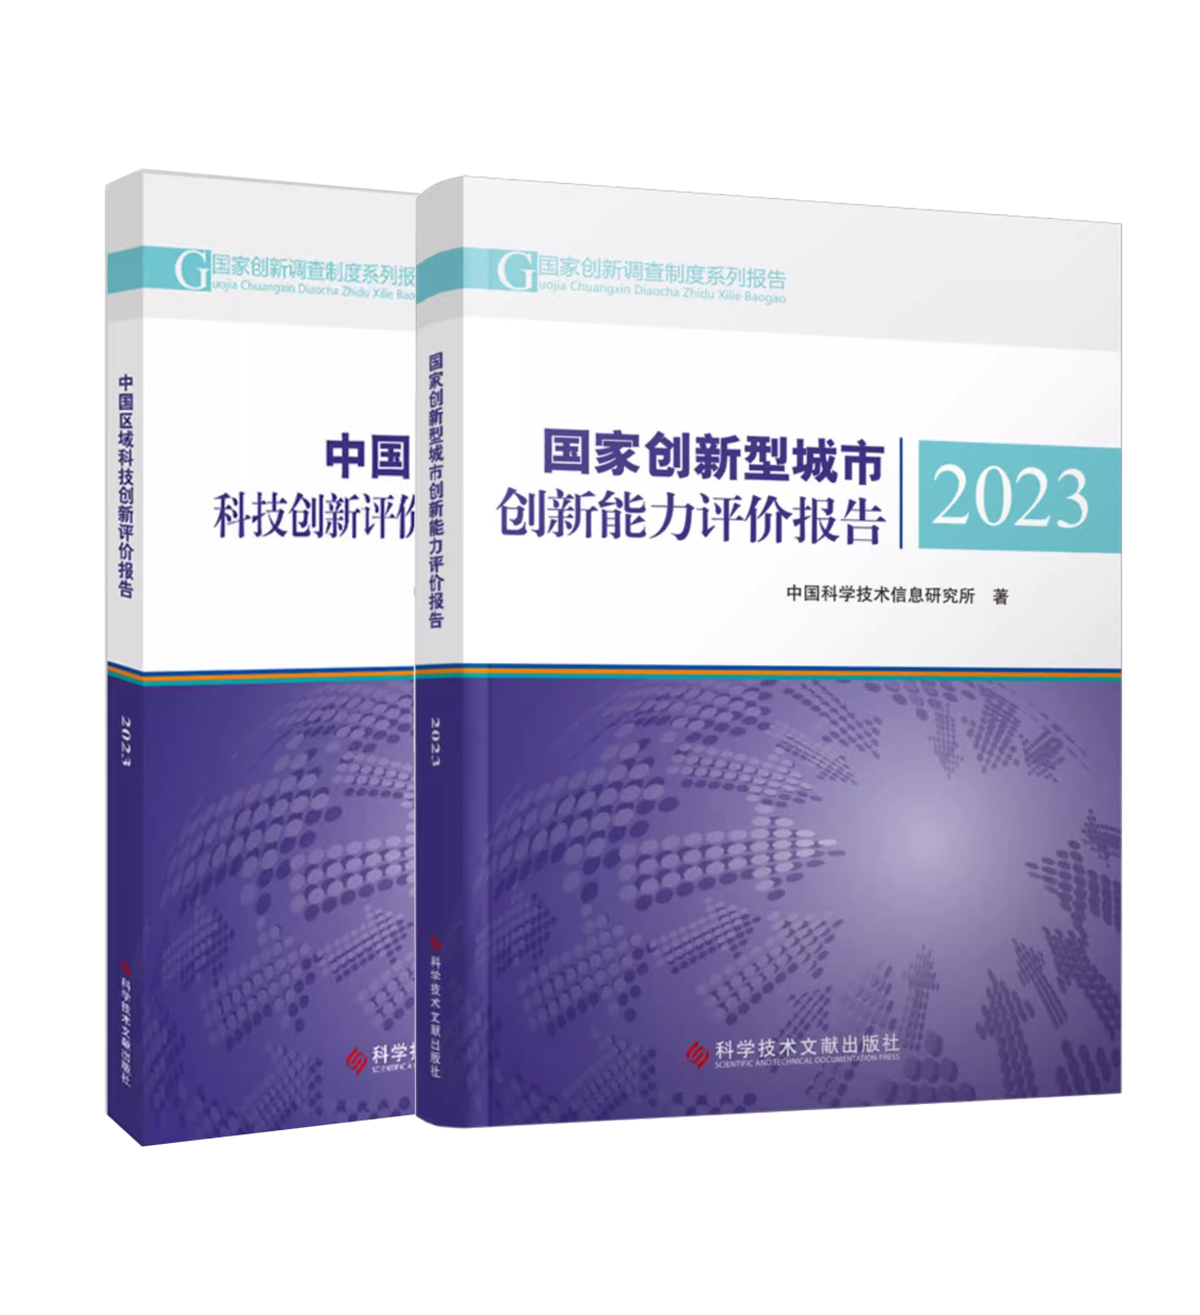 【全2册】国家创新型城市创新能力评价报告2023+中国区域科技创新评价报告2023  中国科学技术信息研究所 科学技术文献出版社